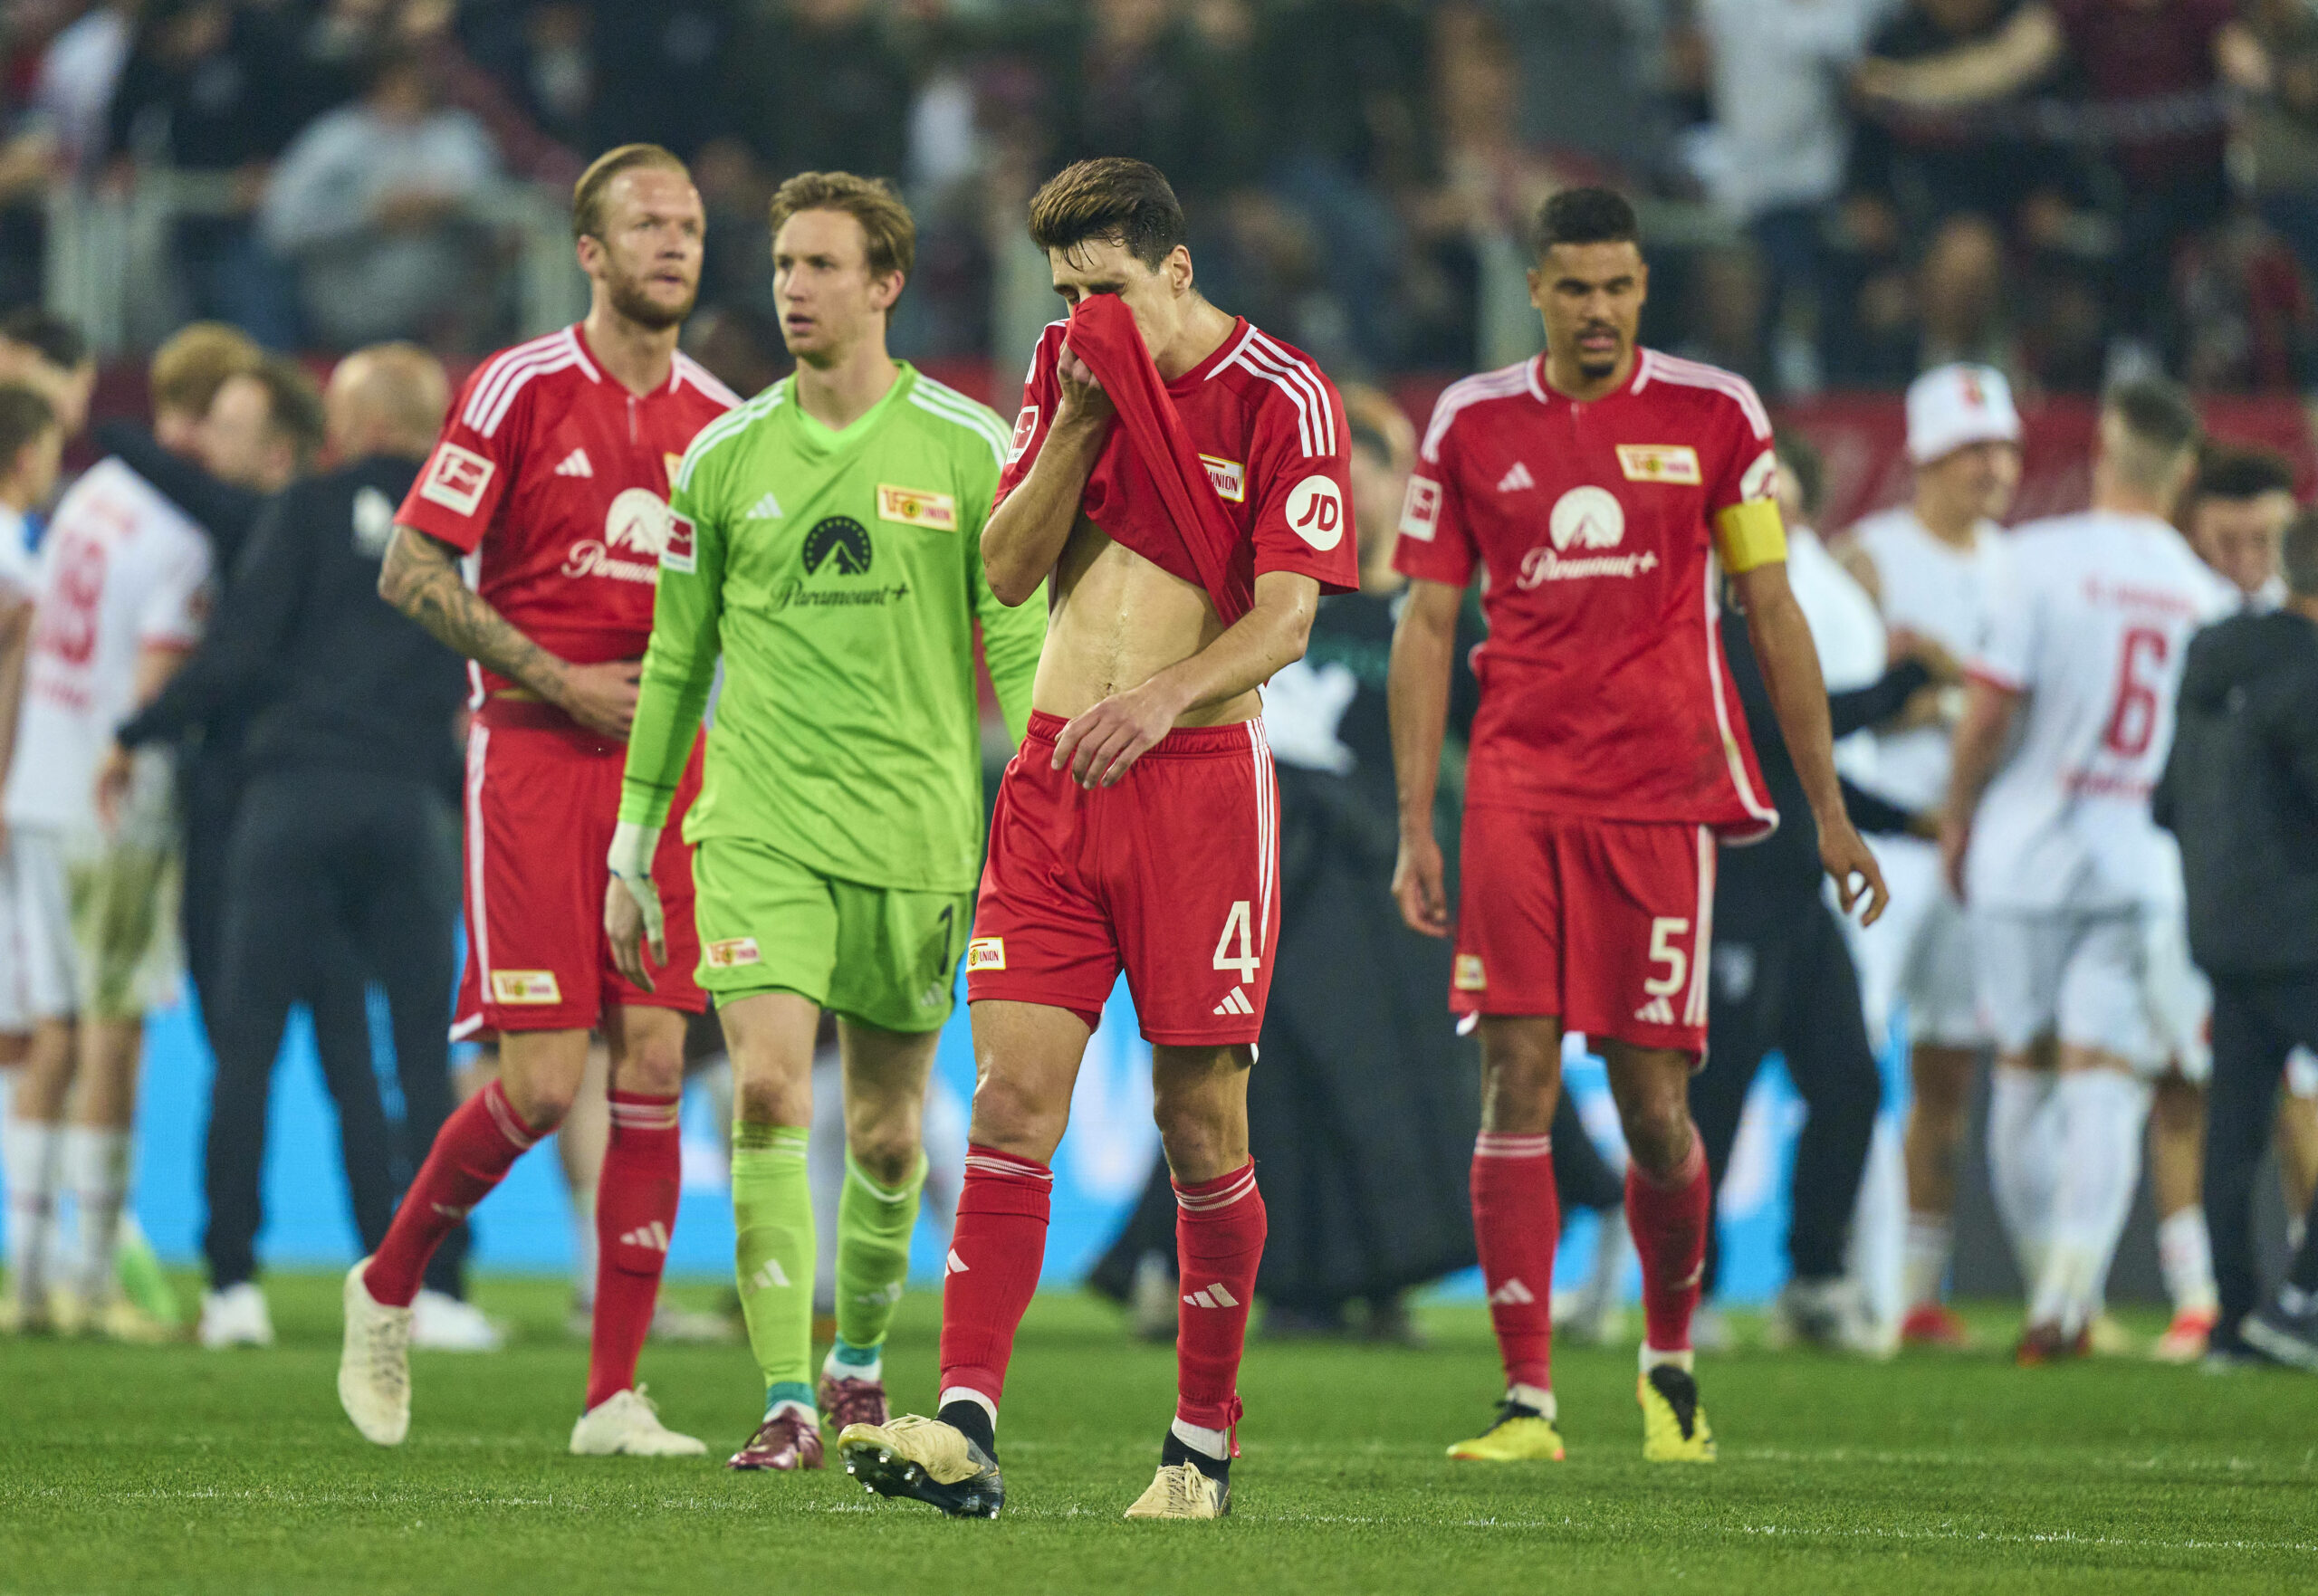 Unions Spieler sind nach der Niederlage in Augsburg sichtlich enttäuscht.